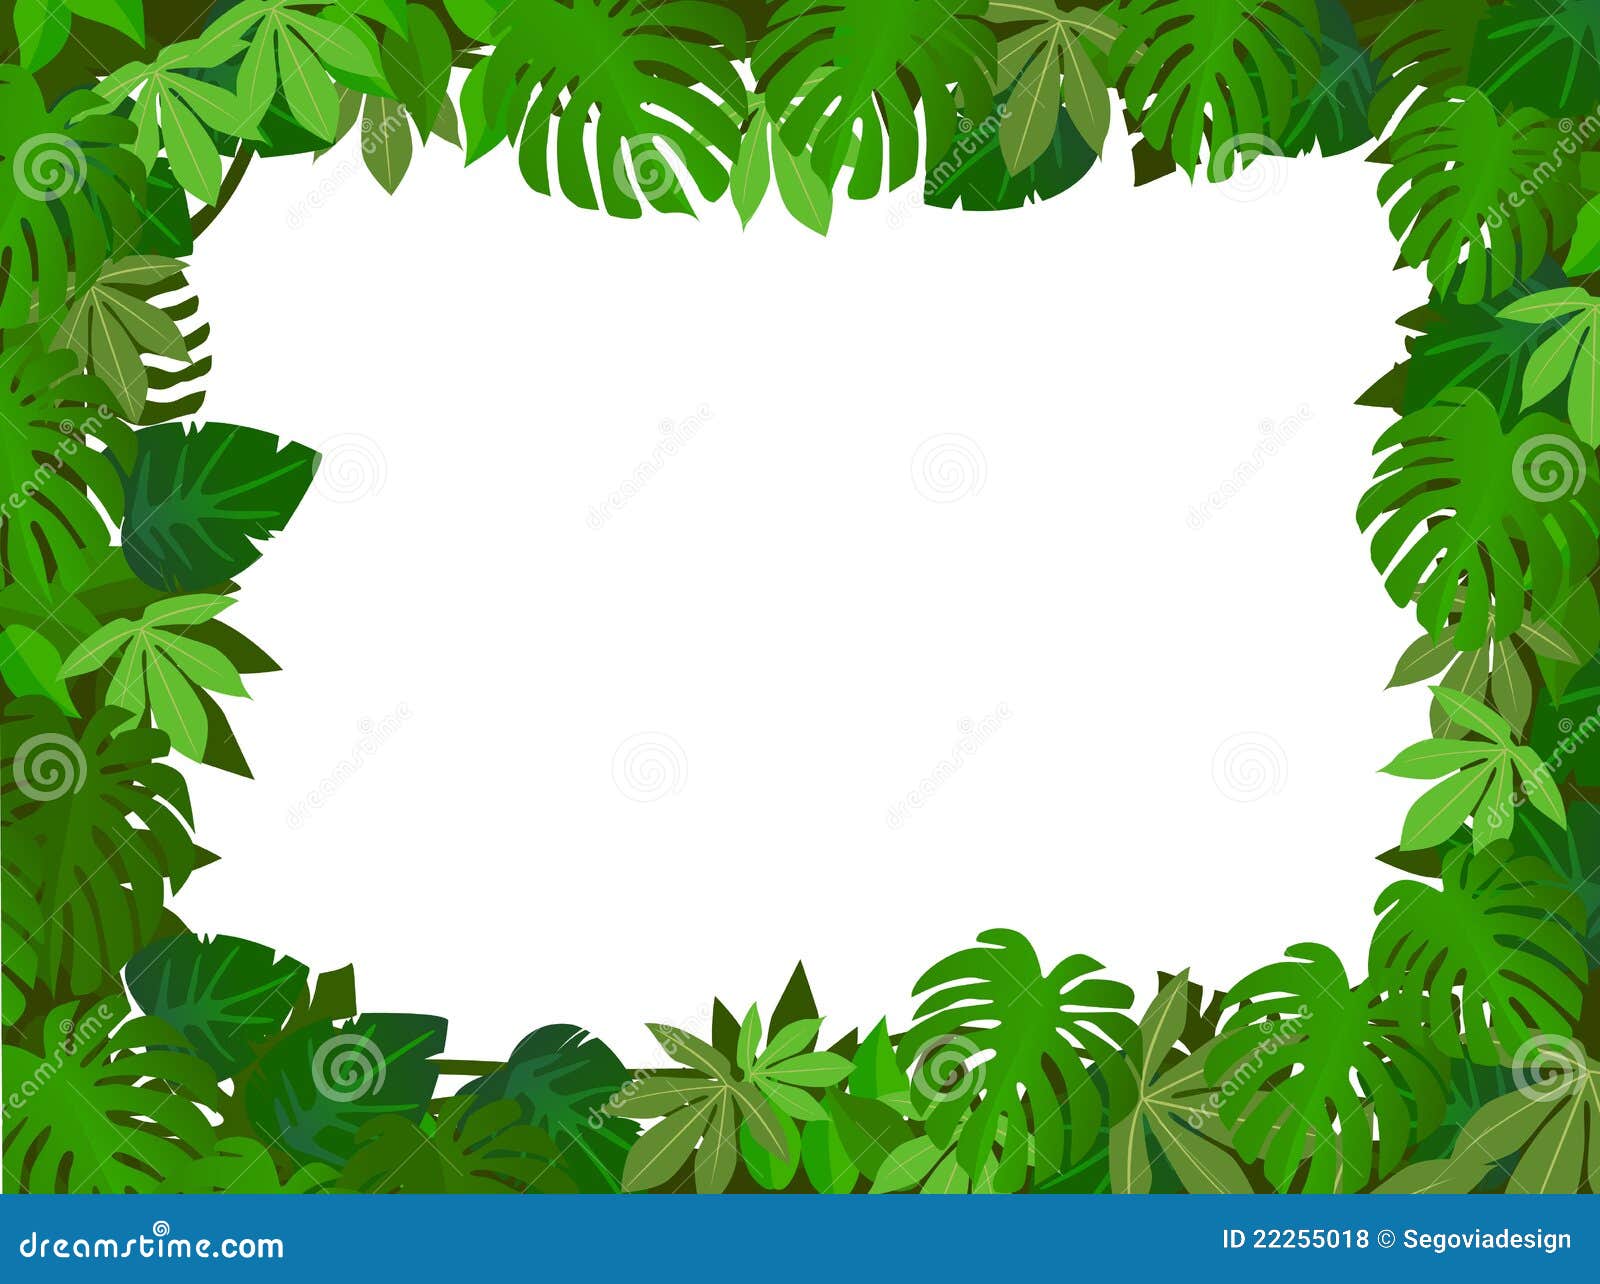 Green leaf background stock illustration. Illustration of summertime ...